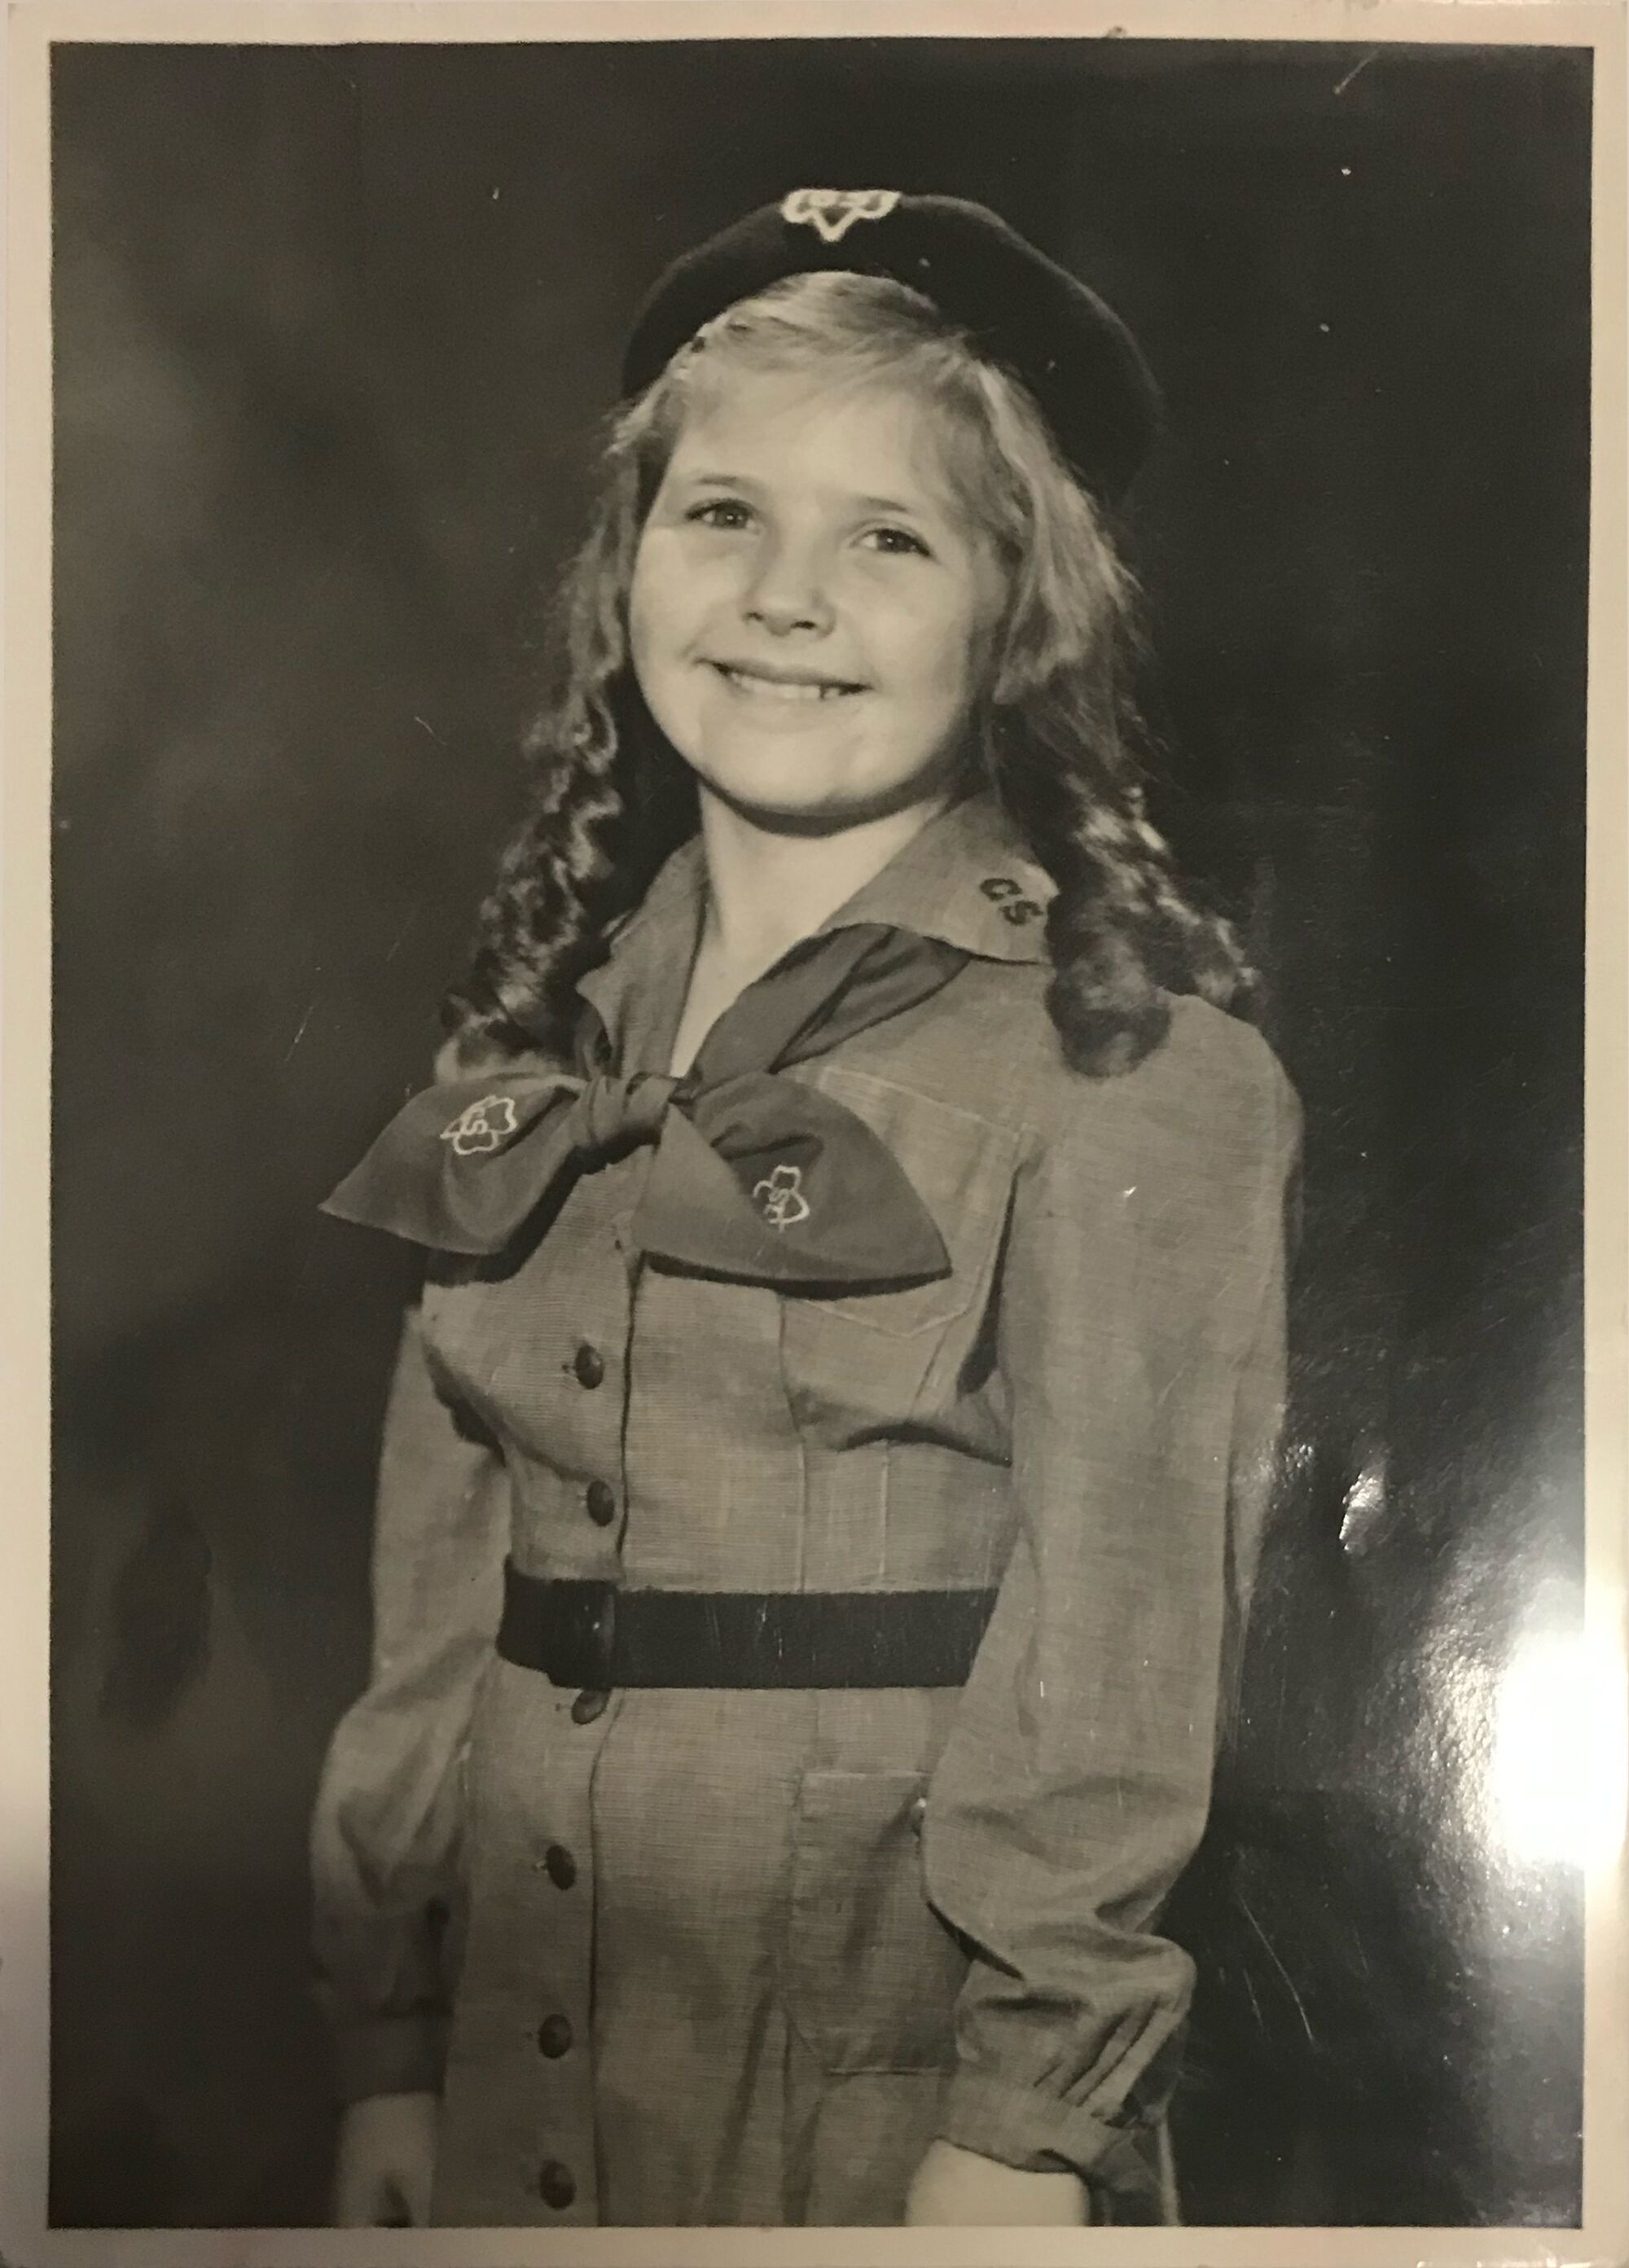 Lora Lee Michel wearing a Girl Scout uniform.